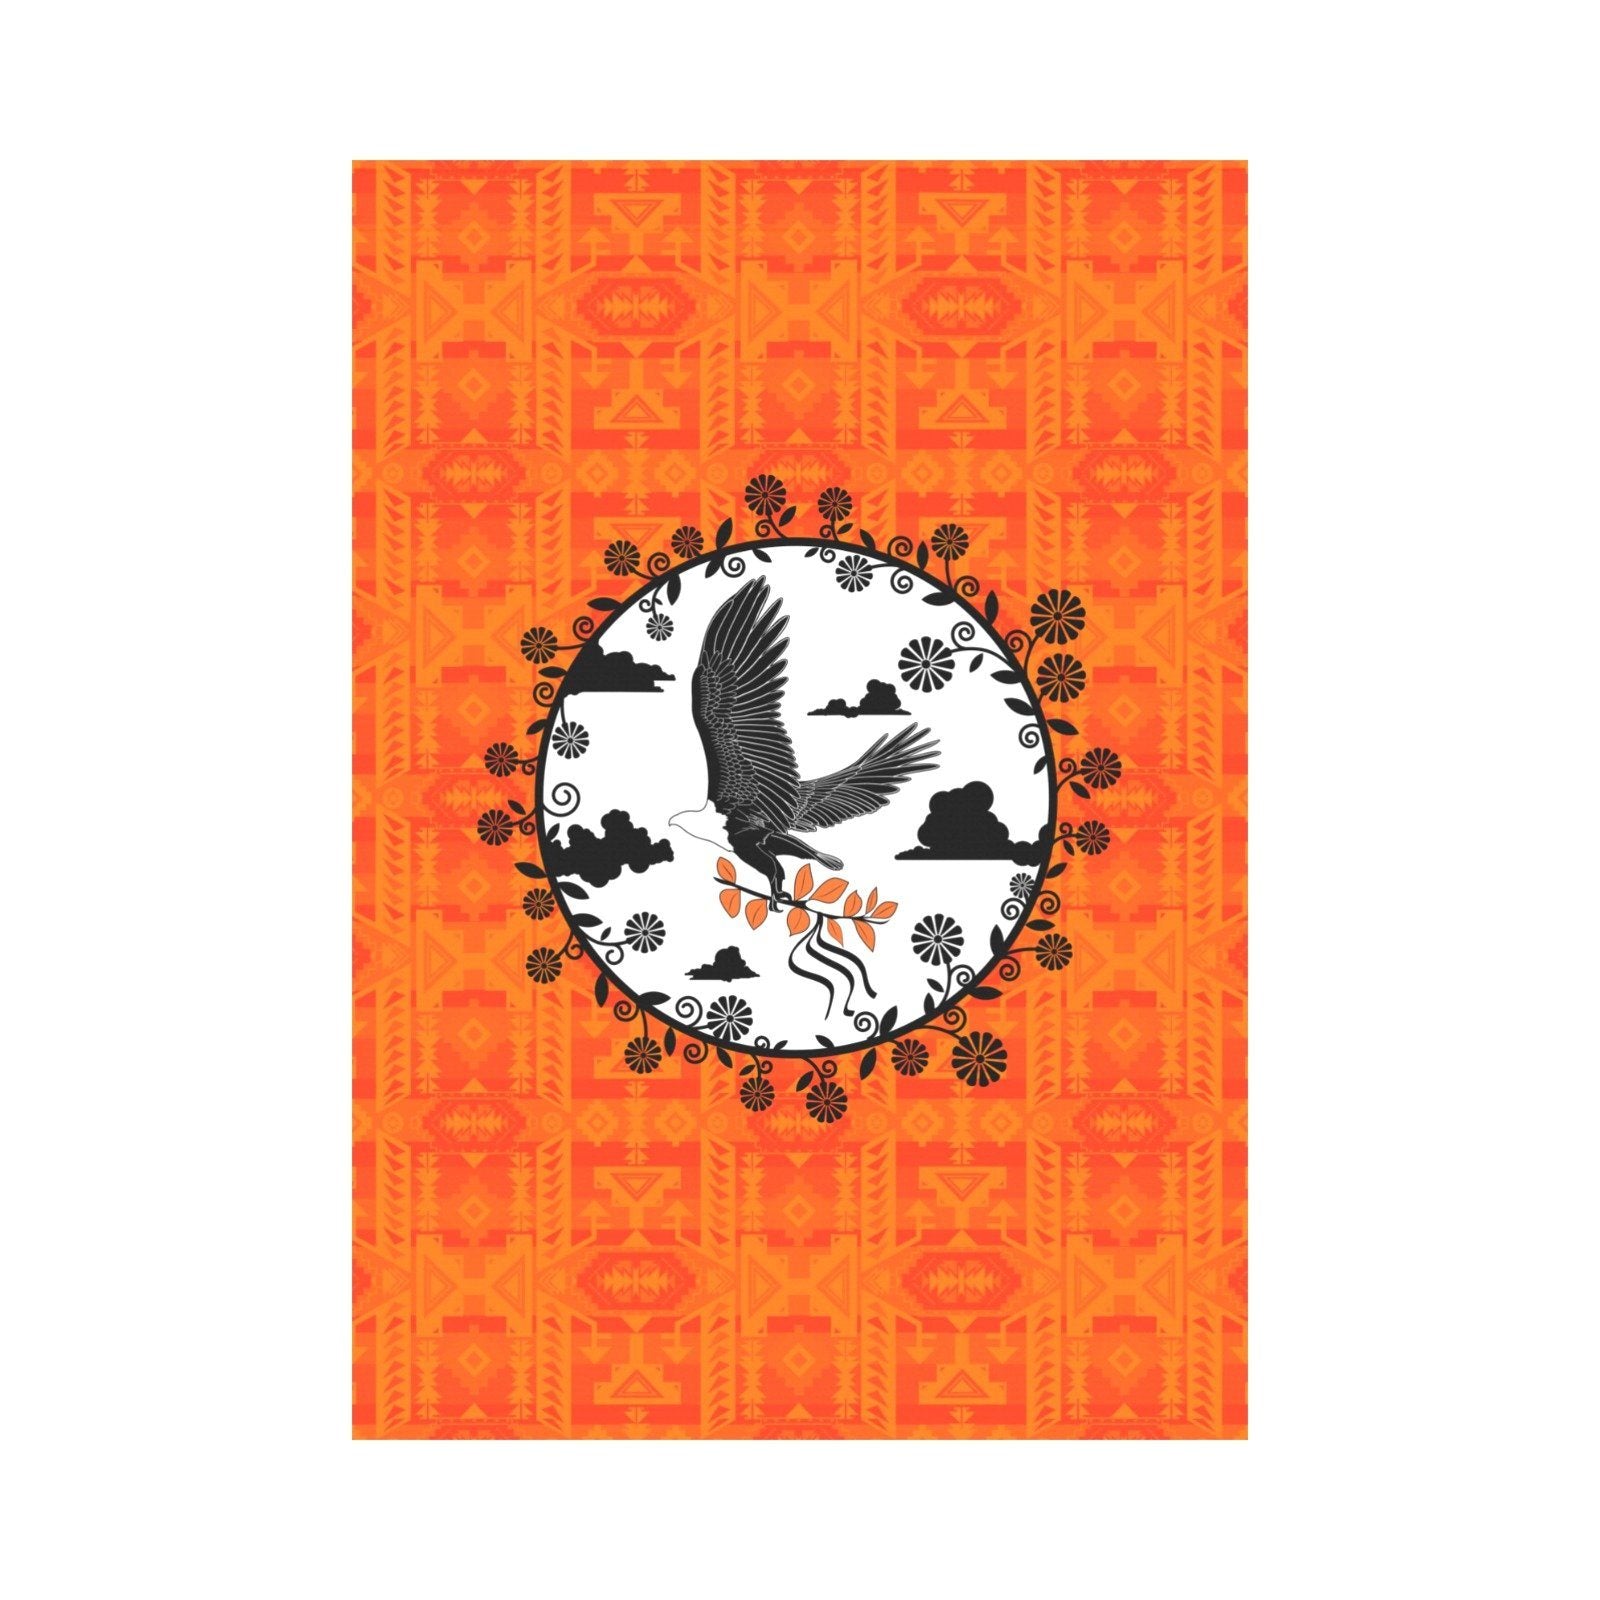 Chiefs Mountain Orange - Carrying Their Prayers Garden Flag 28''x40'' (Two Sides Printing) Garden Flag 28‘’x40‘’ (Two Sides) e-joyer 